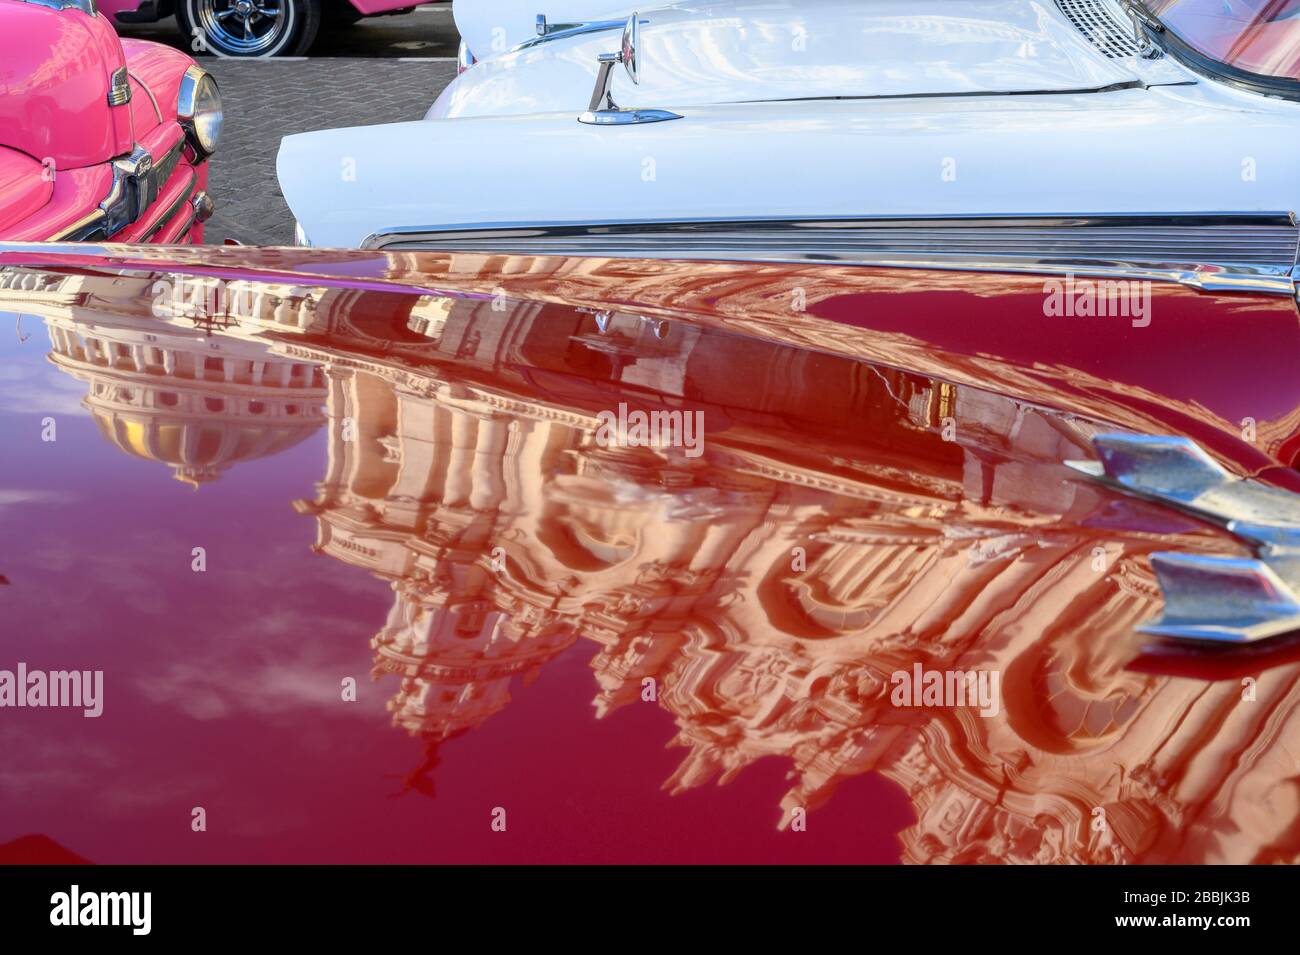 Klassische amerikanische Fünfziger-Autos mit Rückbesinnung auf El Capitolio oder das National Capitol Building und Gran Teatro de La Habana, Havanna, Kuba Stockfoto